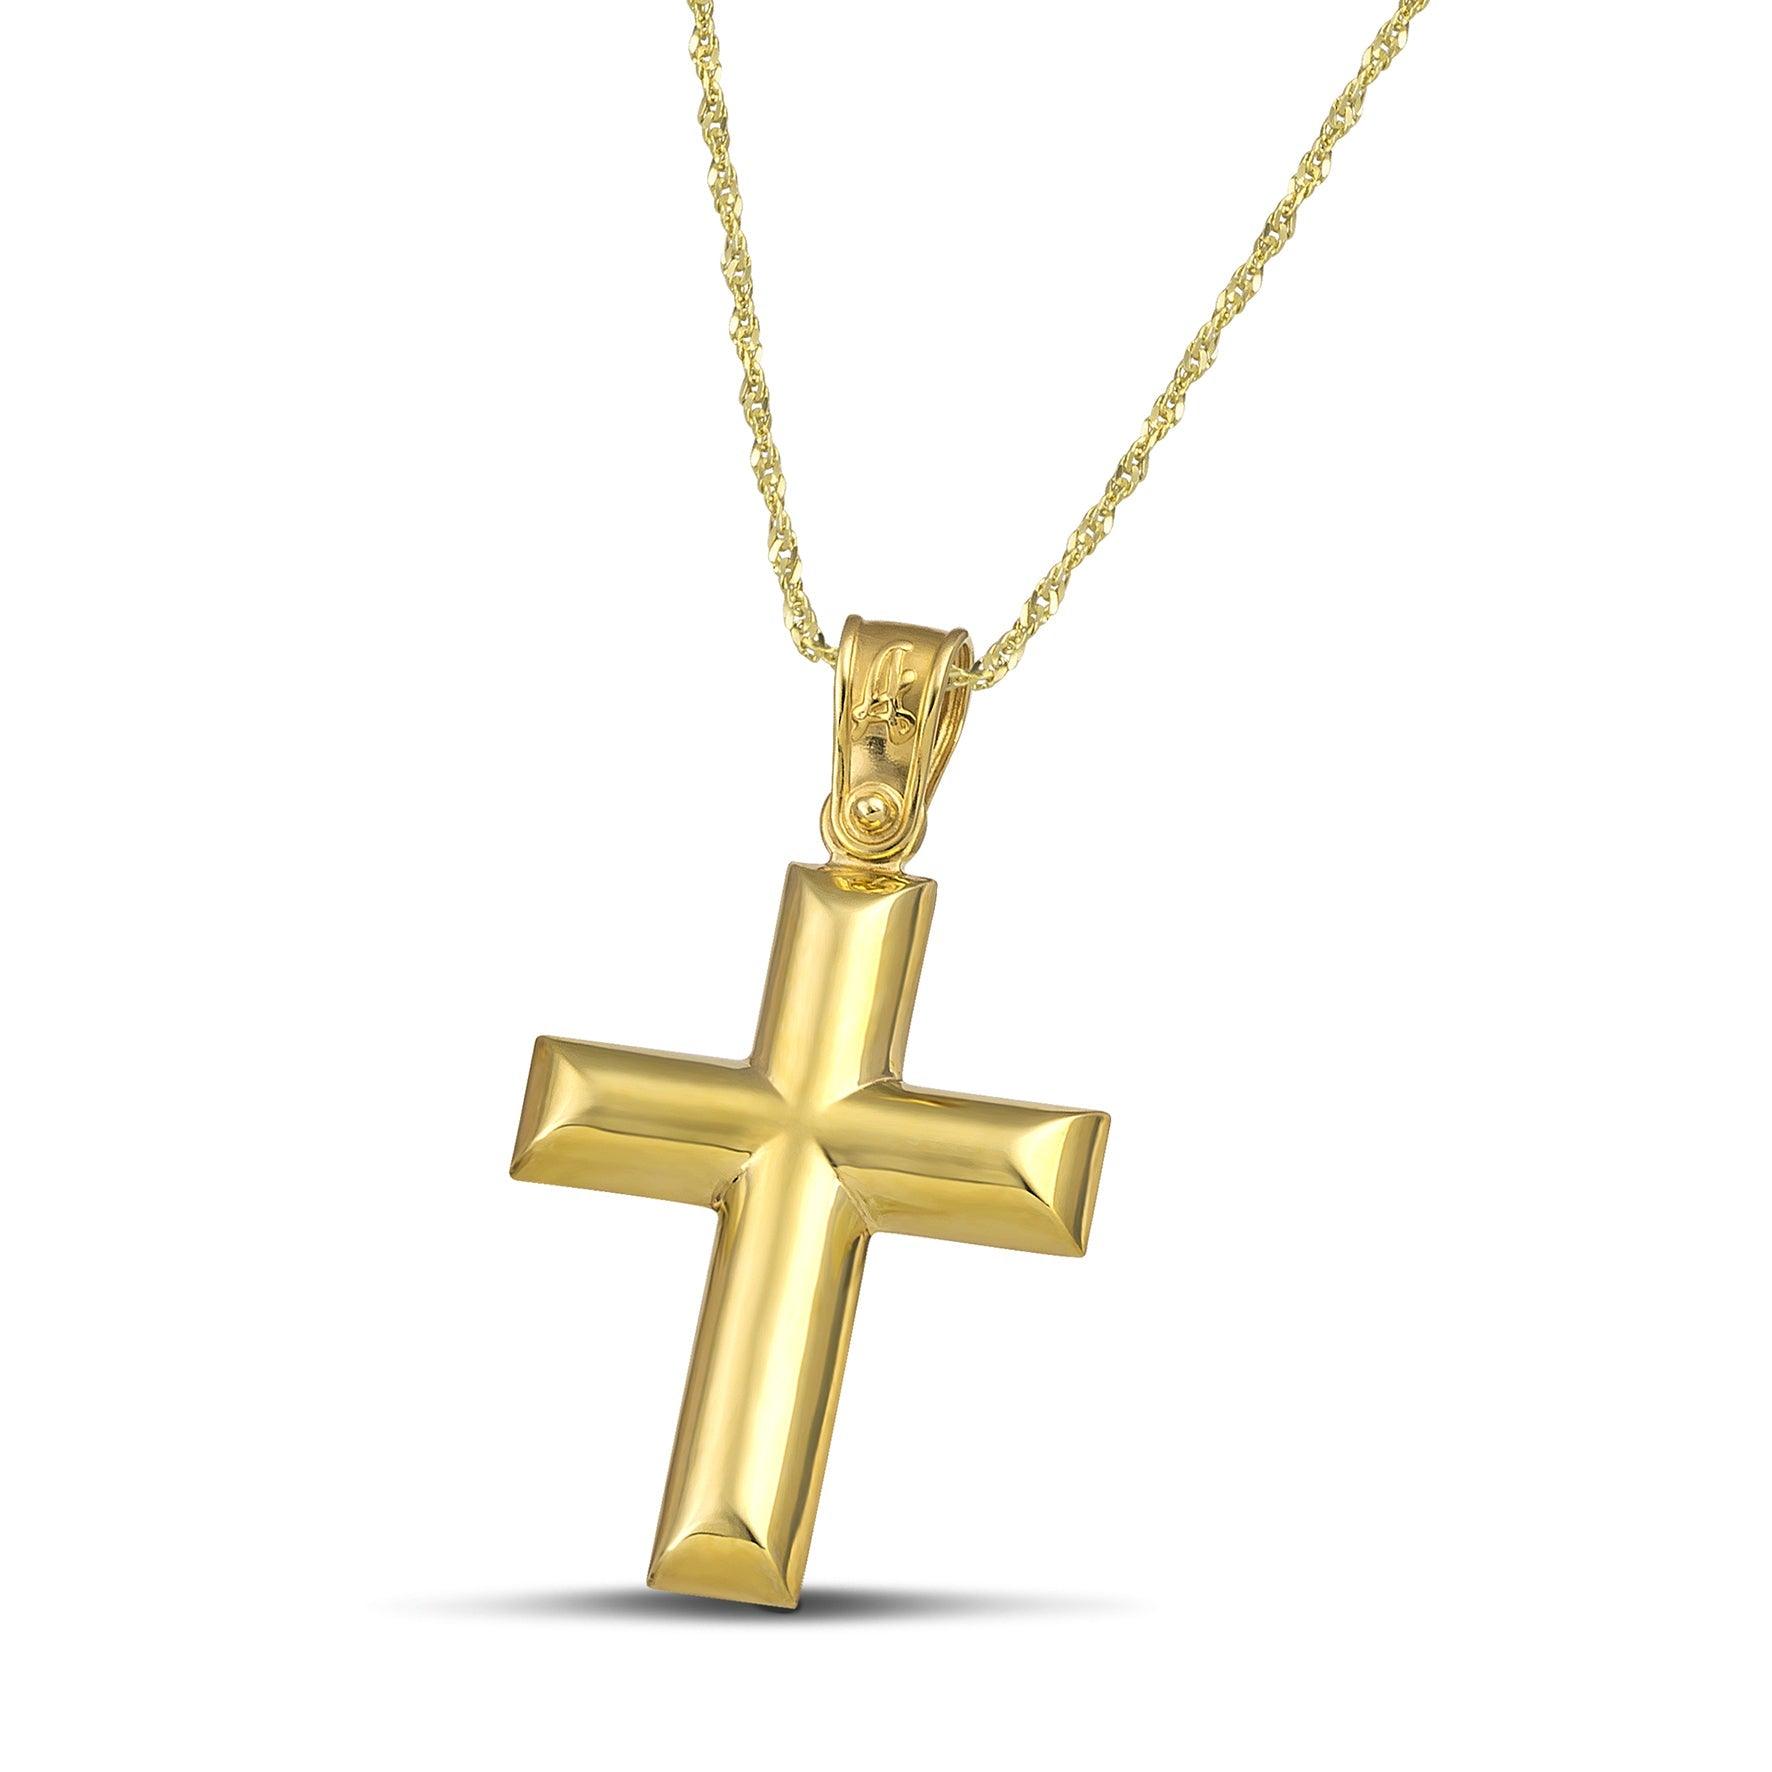 Κλασσικός σταυρός από χρυσό Κ14 για γυναίκα, φορεμένος σε λεπτή , στριφτή αλυσίδα.